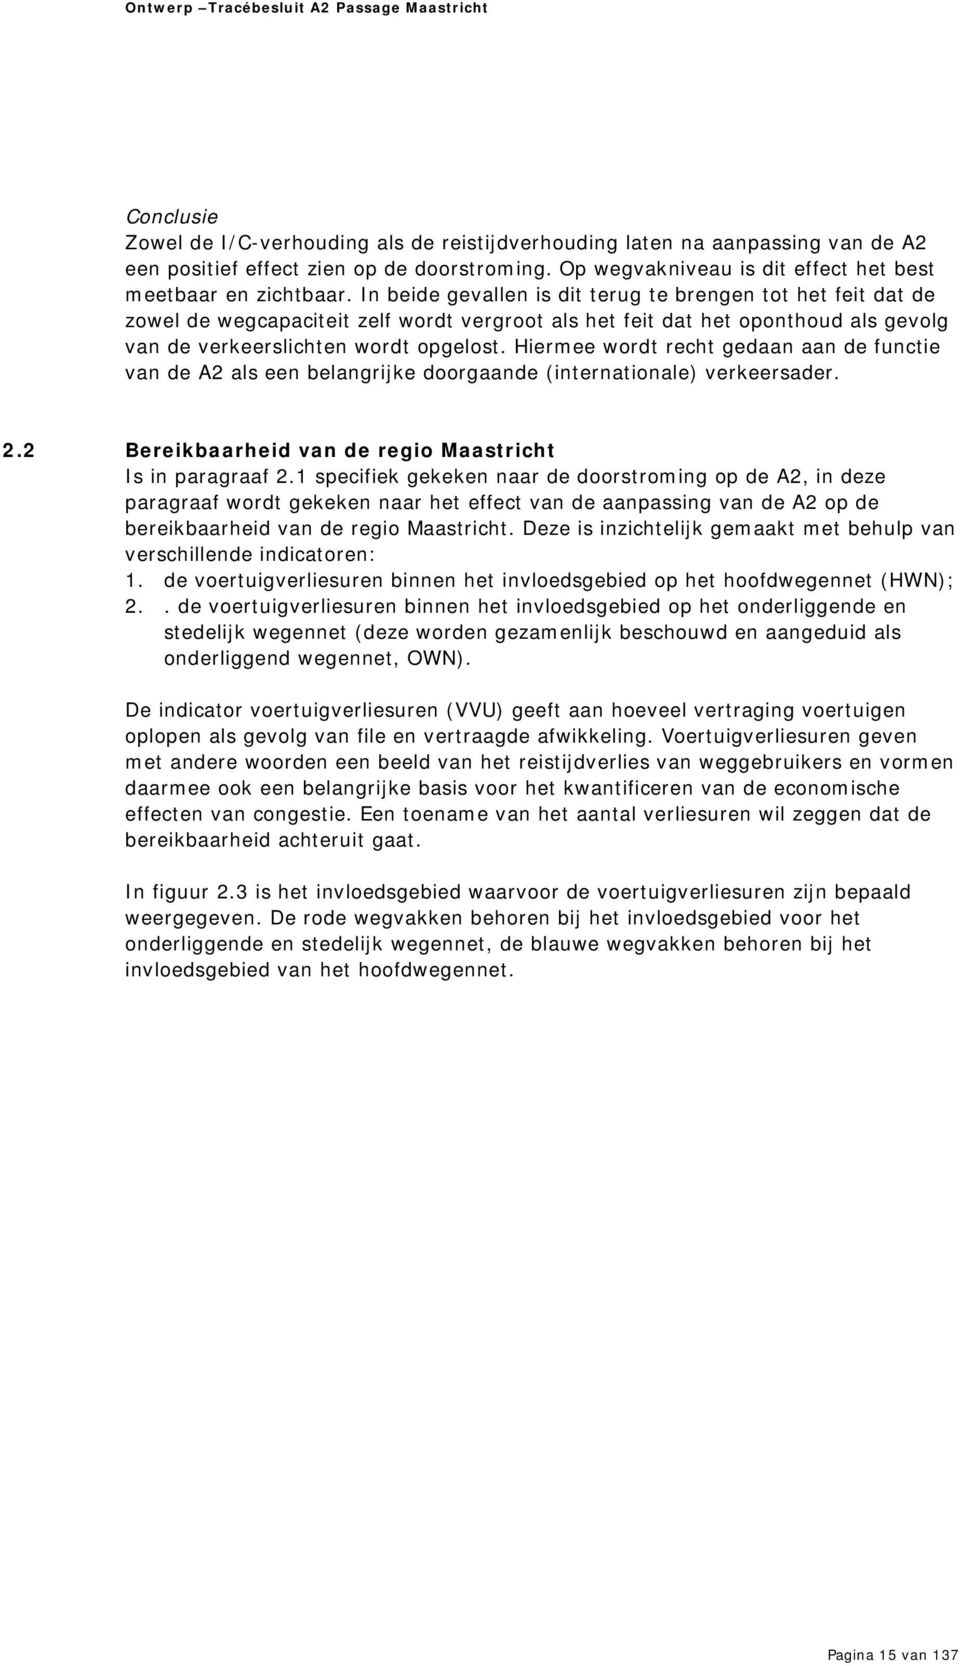 Hiermee wordt recht gedaan aan de functie van de A2 als een belangrijke doorgaande (internationale) verkeersader. 2.2 Bereikbaarheid van de regio Maastricht Is in paragraaf 2.